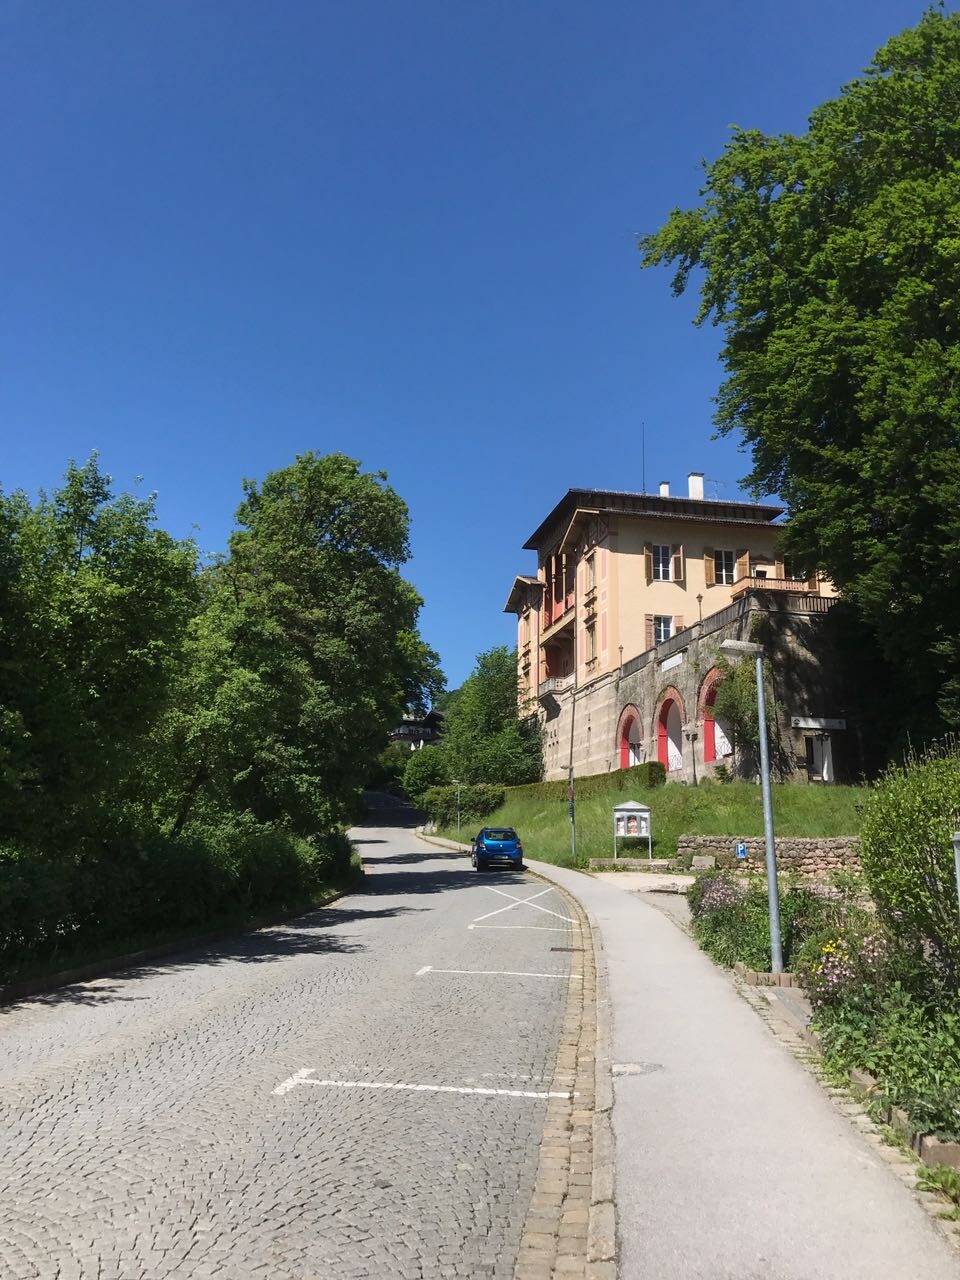 度假公寓皇家别墅Berchtesgaden